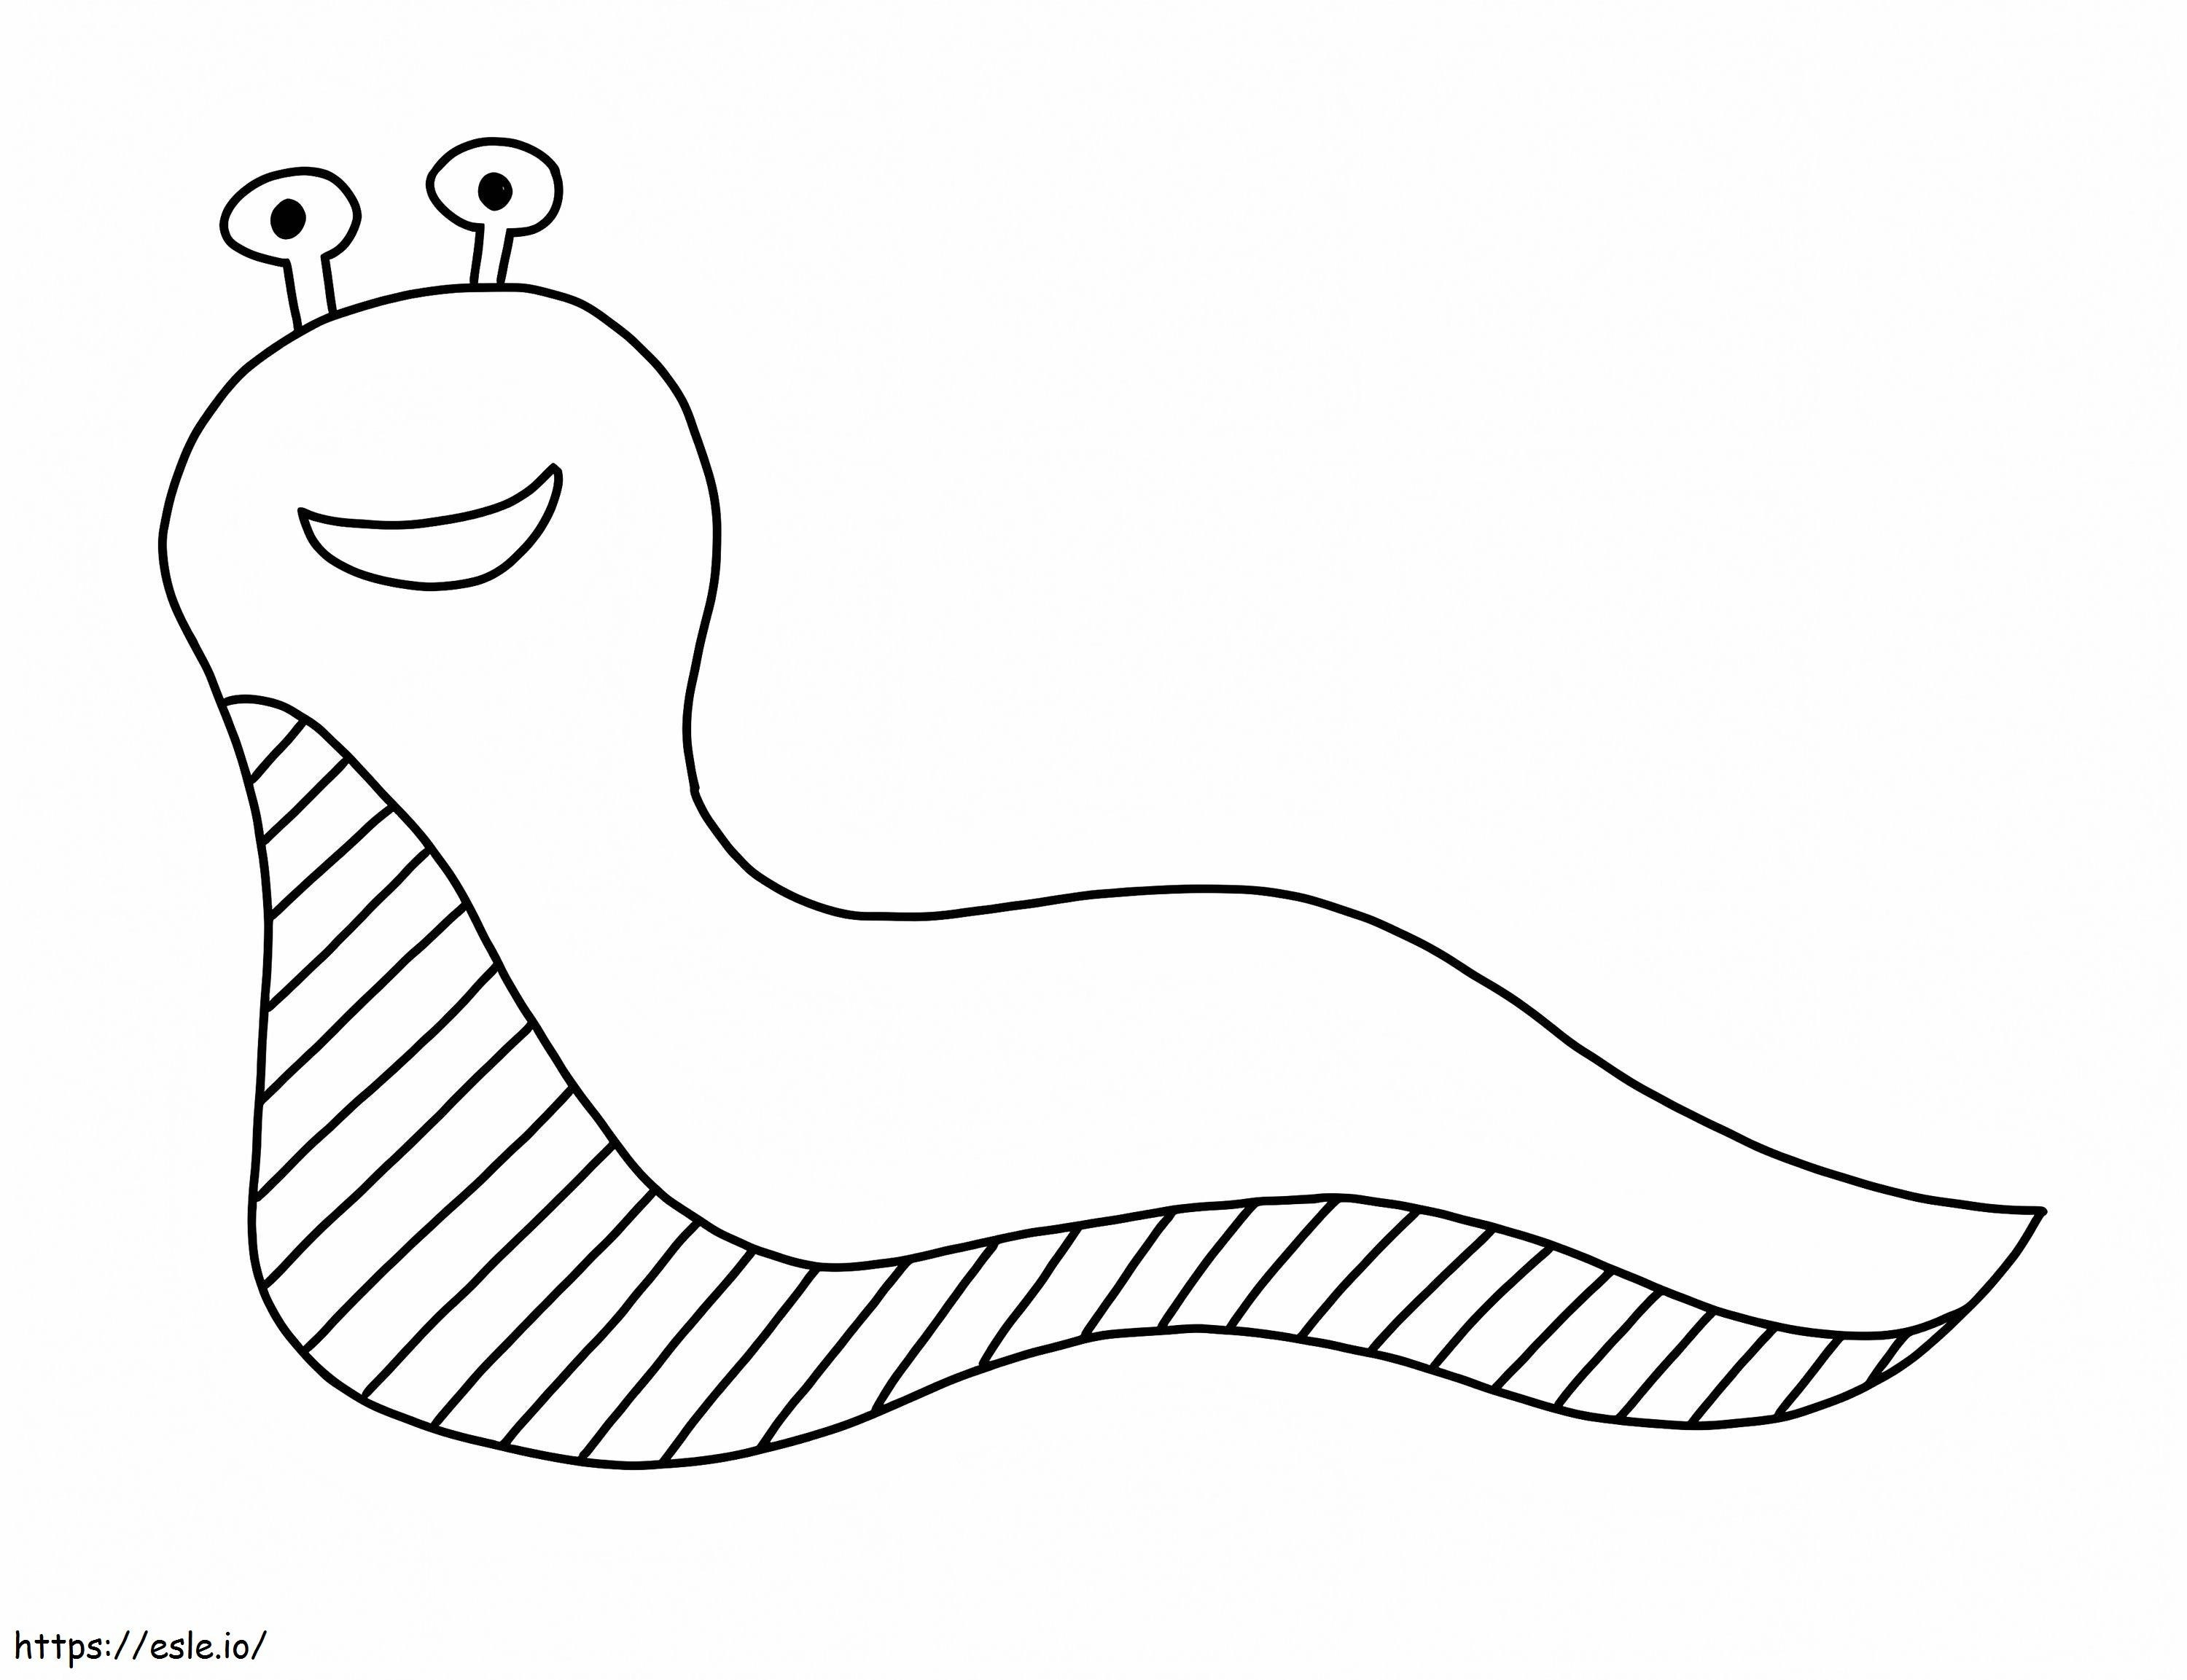 Slug Is Smiling coloring page